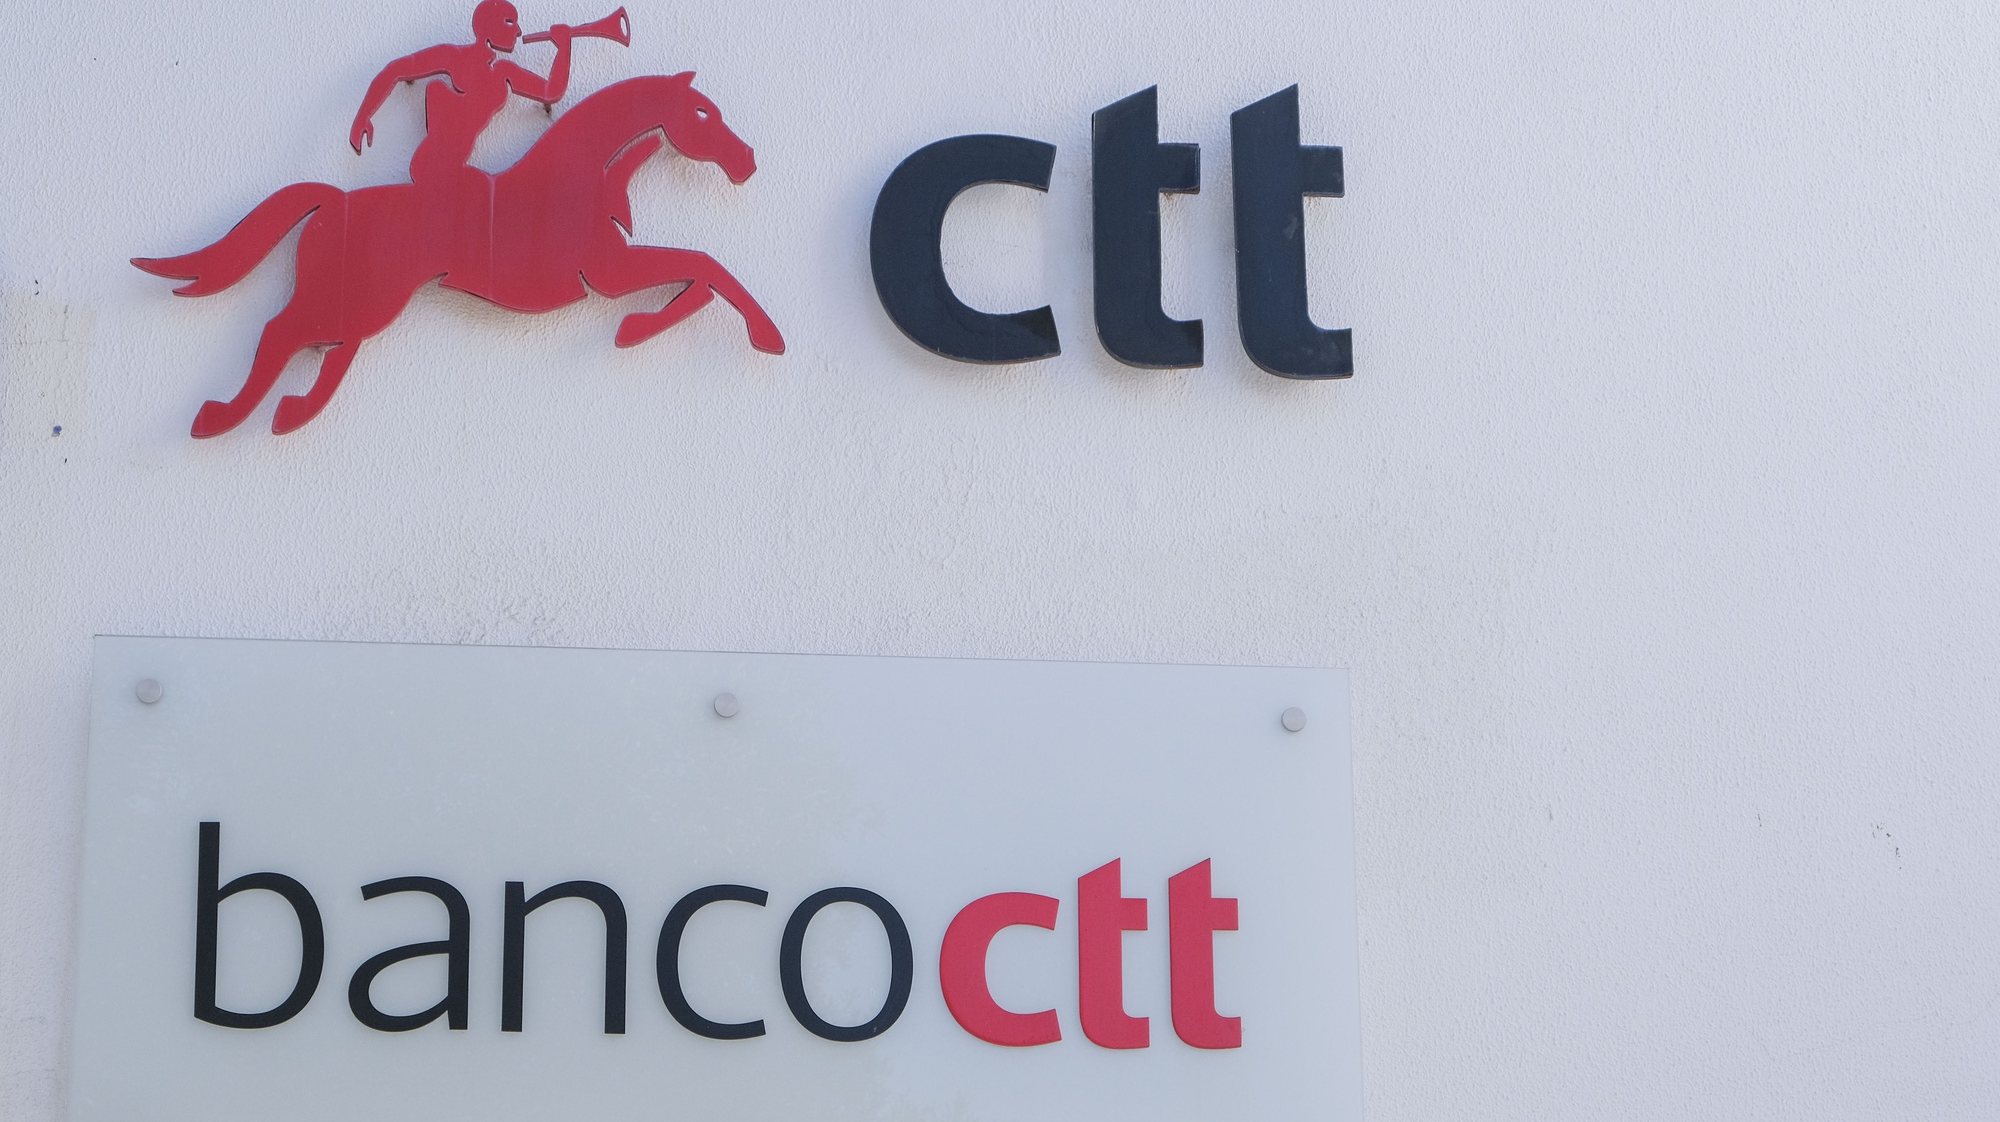 Logotipo do banco CTT, Lisboa, 10 de fevereiro  de 2021. ANTÓNIO COTRIM/LUSA